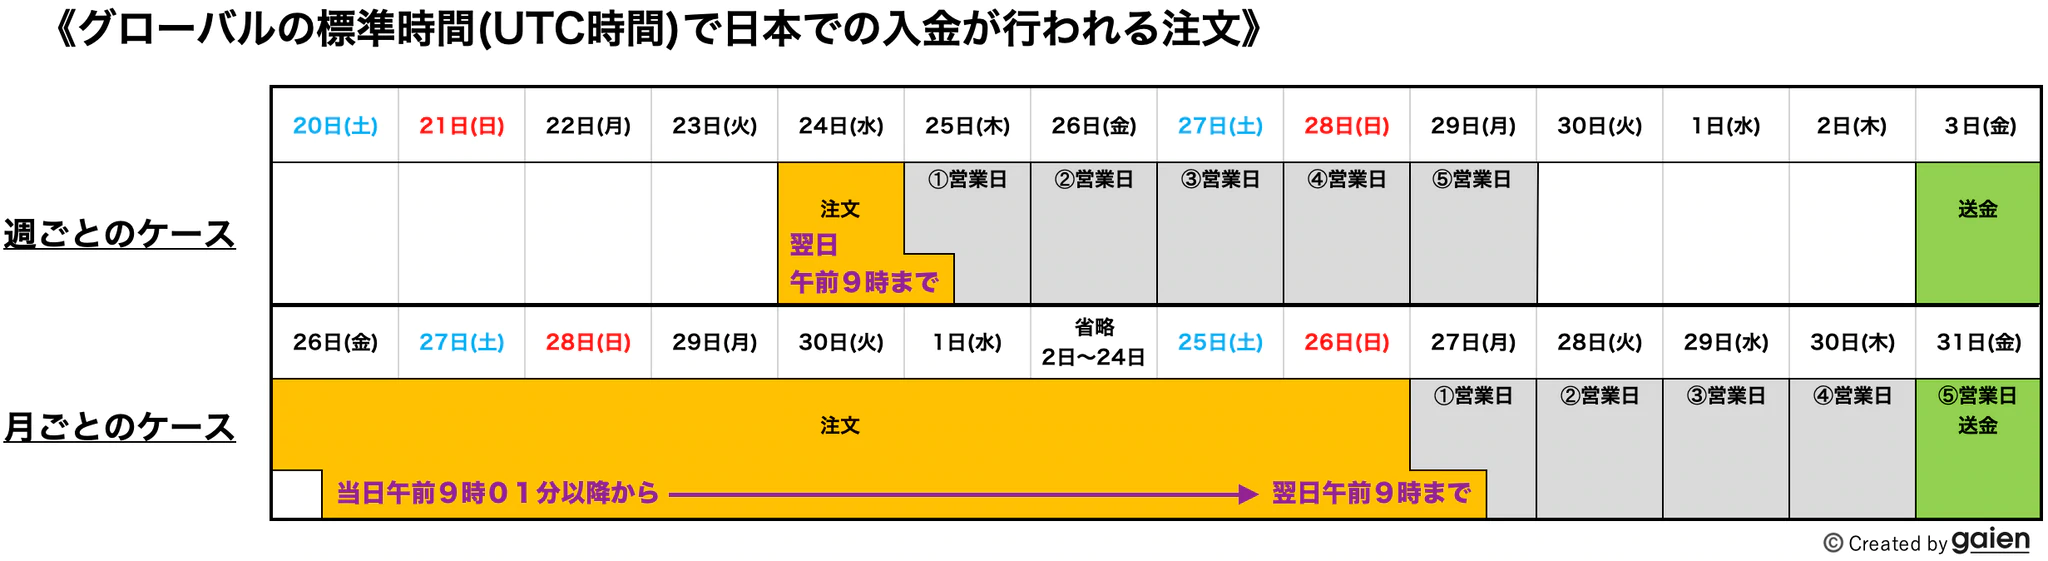 日本時間とUTC時間は9時間の時差があるので、入金が反映される対象は午前9時が区切りとなる